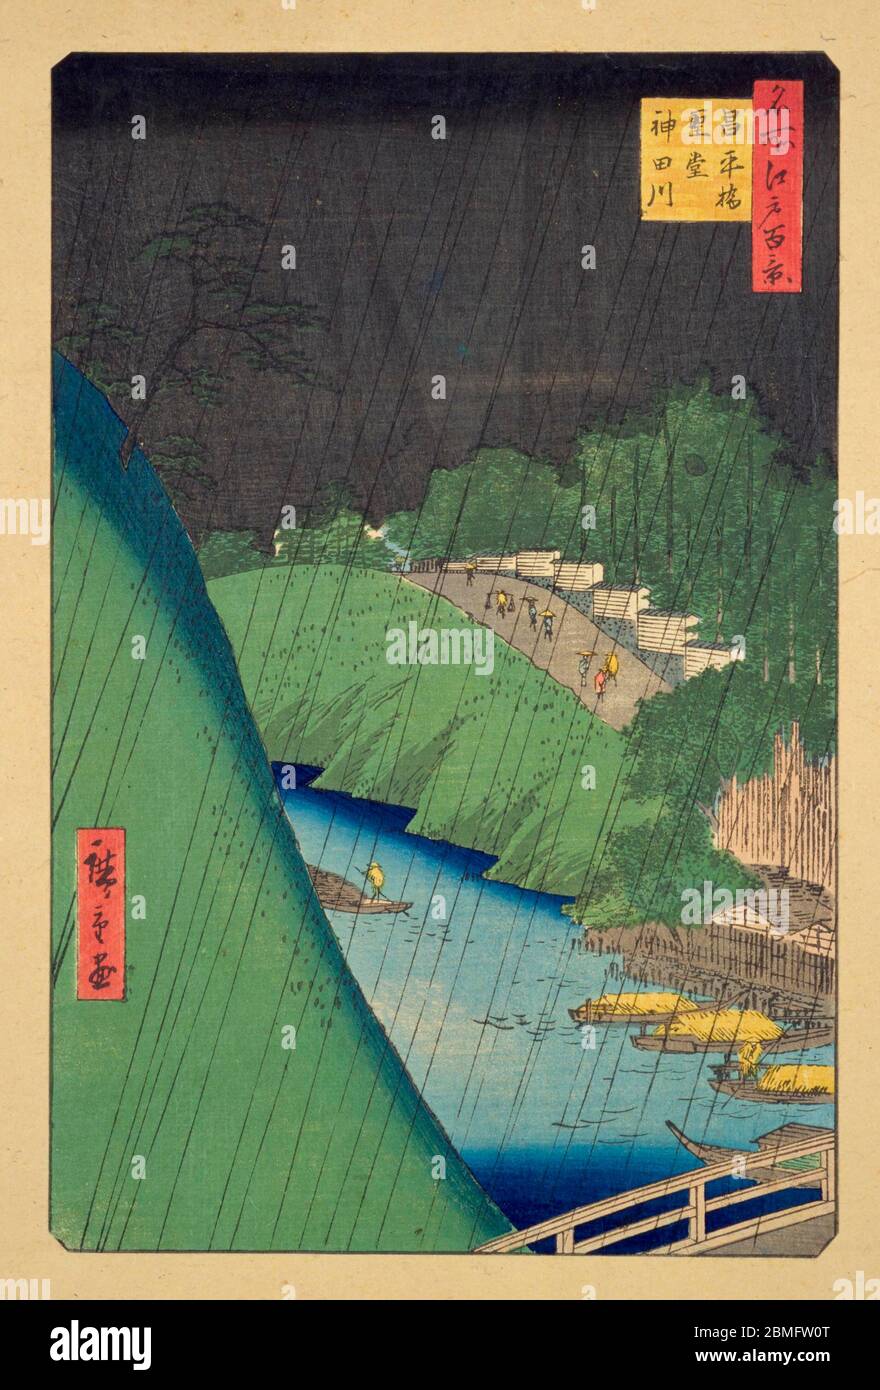 [ 1850er Japan - Kandagawa River in the Rain ] - der Kandagawa River in Edo (aktuelle Tokyo) im Regen, 1857 (Ansei 4). Dieser Holzschnitt ist Bild 47 in hundert berühmten Ansichten von Edo (名所江戸百景, Meisho Edo Hyakkei), einer Serie von Ukiyoe Künstler Utagawa Hiroshige (歌川広重, 1797–1858) erstellt. Es ist eine von 30 Sommerszenen der Serie. Titel: Seido und Kandagawa Fluss von Shoheibashi Brücke (昌平橋聖堂神田川, Shoheibashi Seido Kandagawa) 19. Jahrhundert Vintage Ukiyoe Holzschnitt. Stockfoto